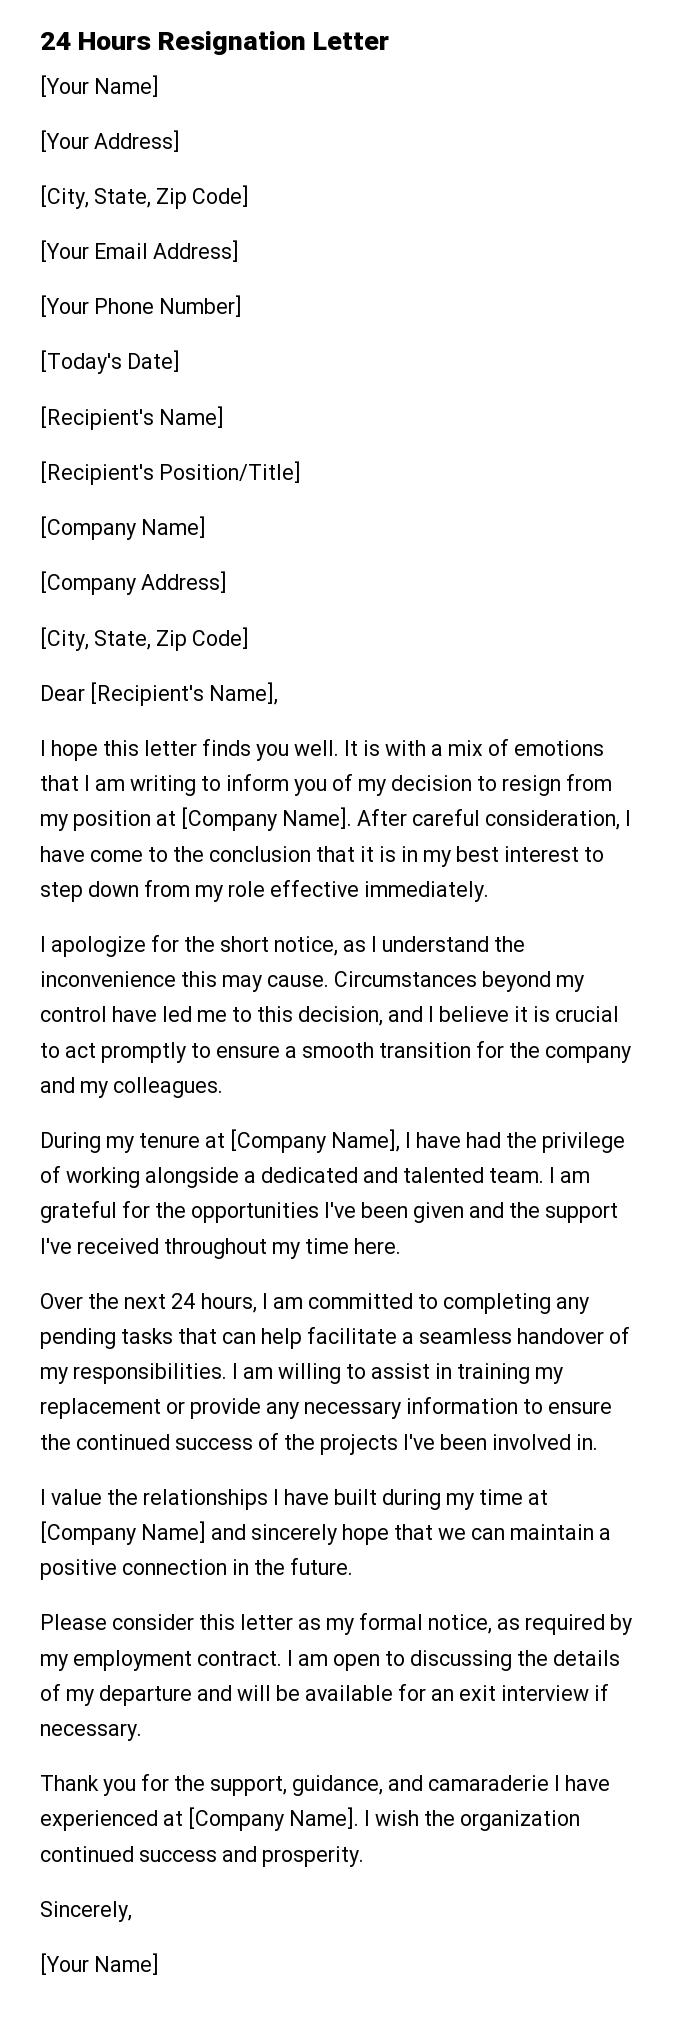 24 Hours Resignation Letter